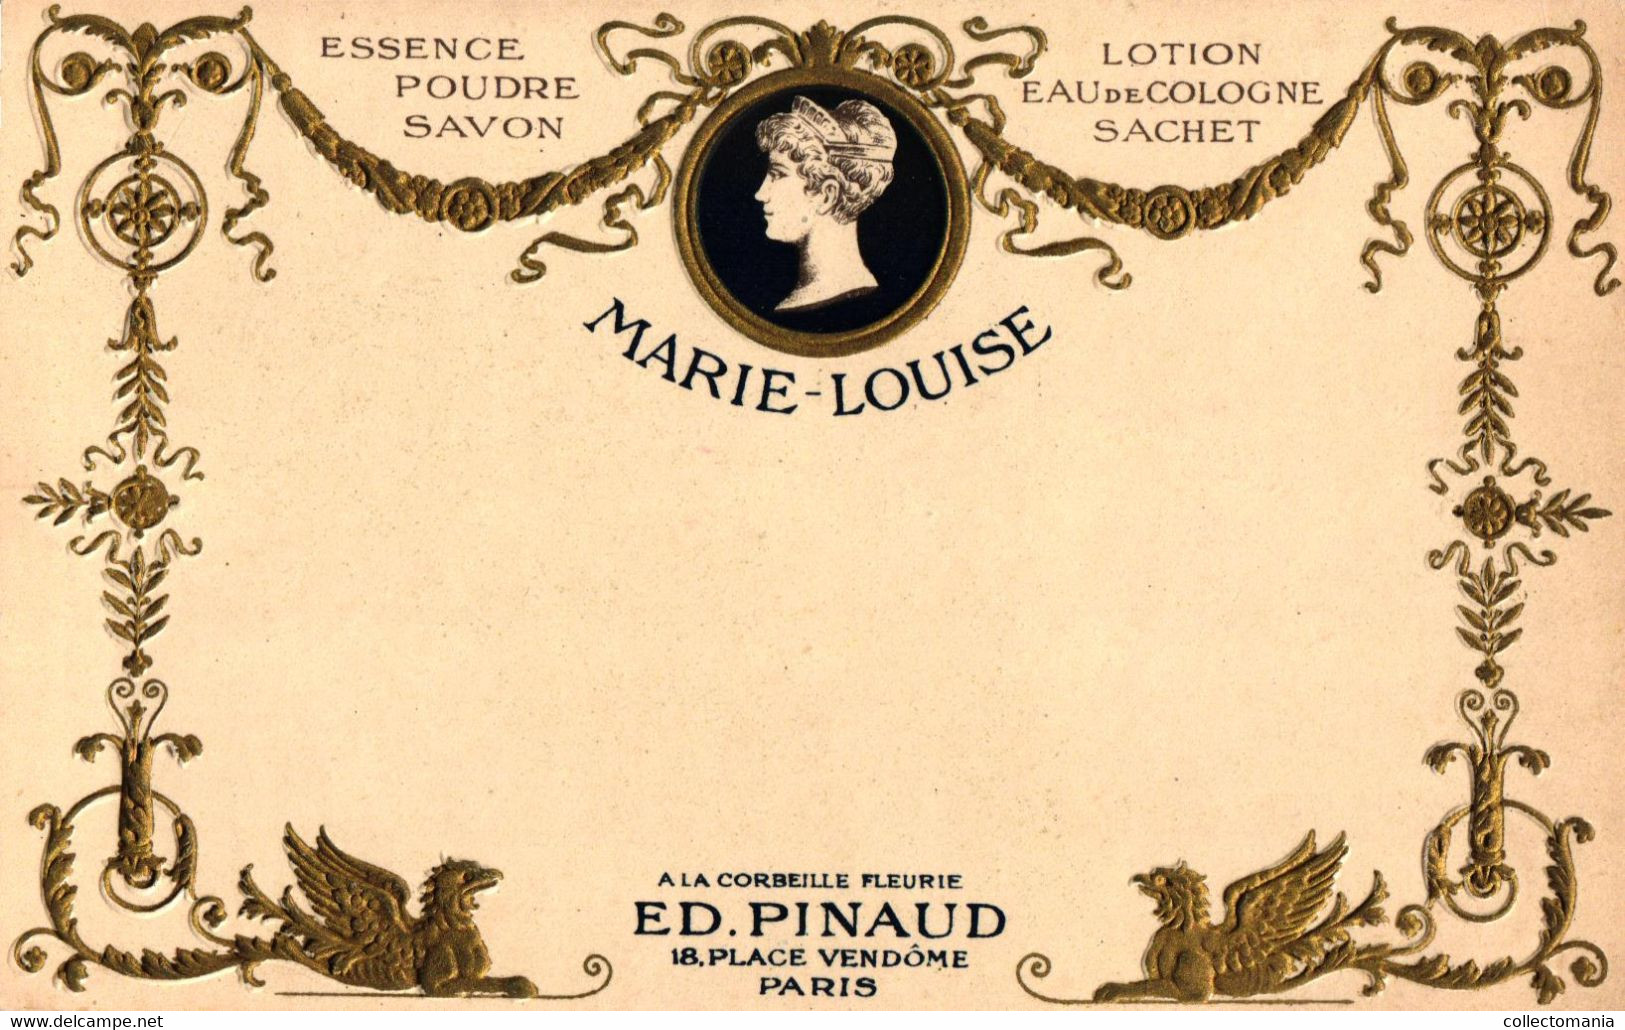 9 CP. Parfumerie Ed. Pinaud Place Vendôme Paris Expo 1900 Parfum Mad.Royale Essence Marie-Louise Embossed Relief Embossé - Anciennes (jusque 1960)